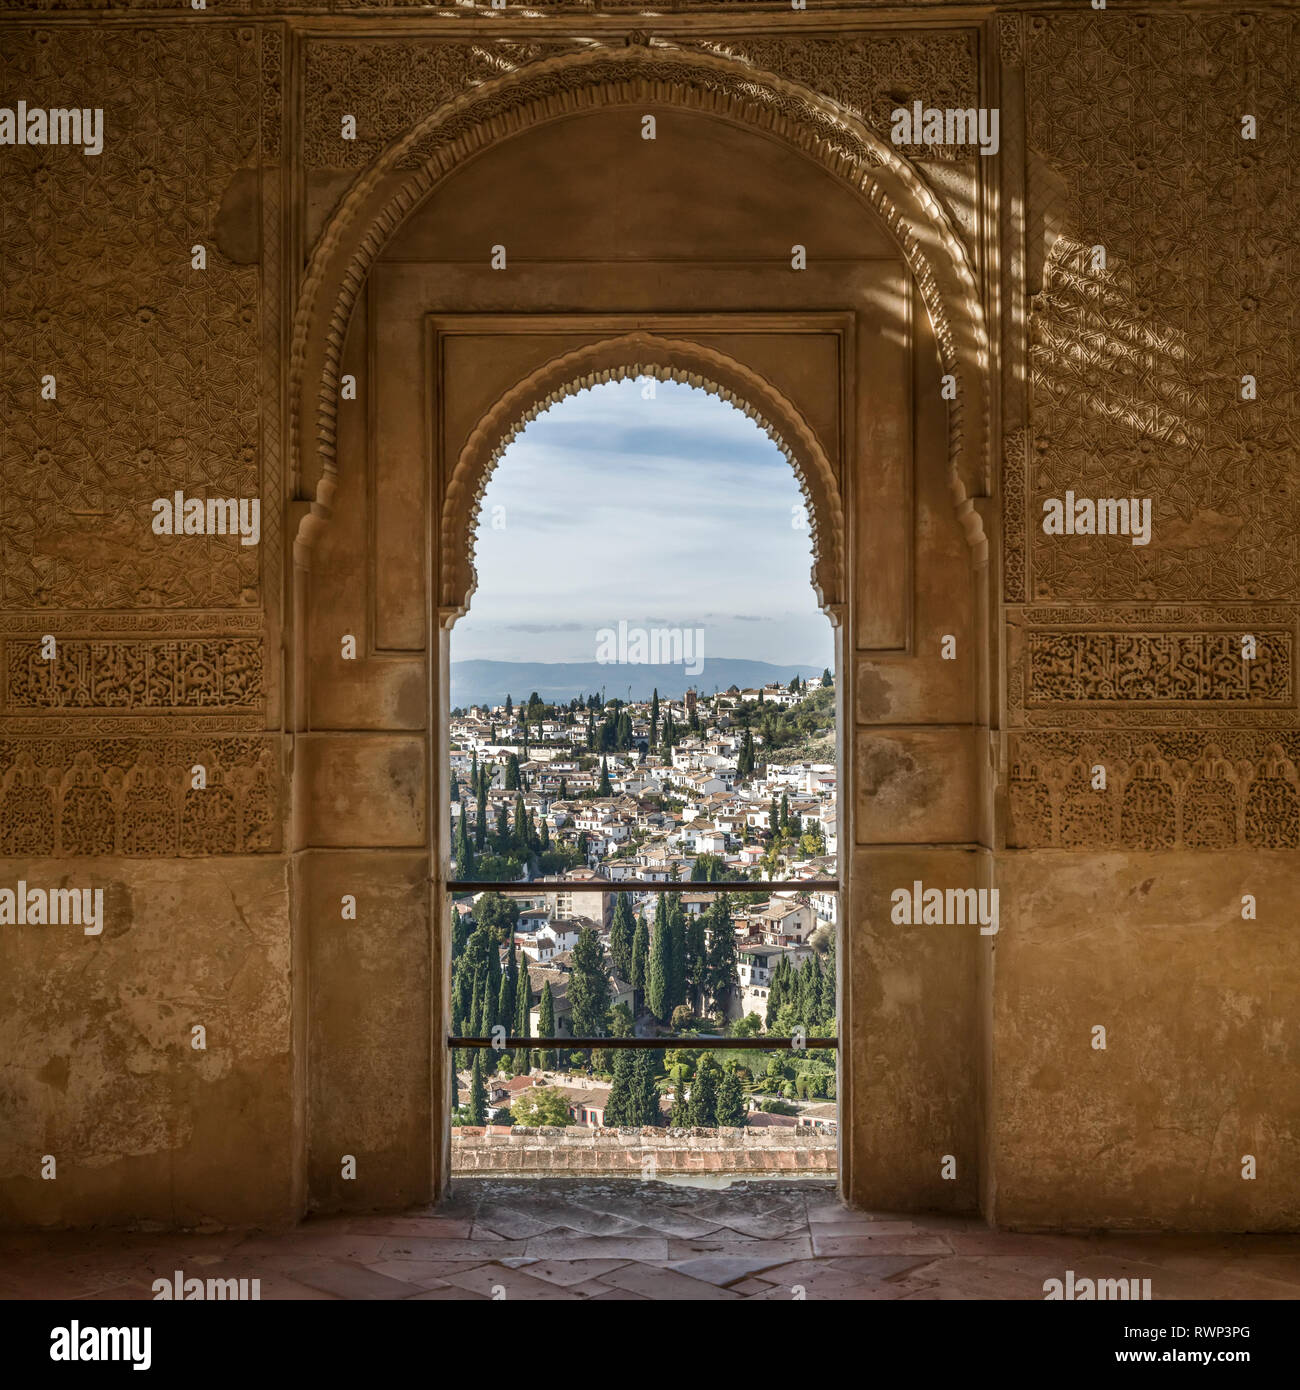 Reich verzierte Detail an einer Innenwand Fassade mit Blick auf die Stadt Granada, Granada, Provinz Granada, Spanien Stockfoto